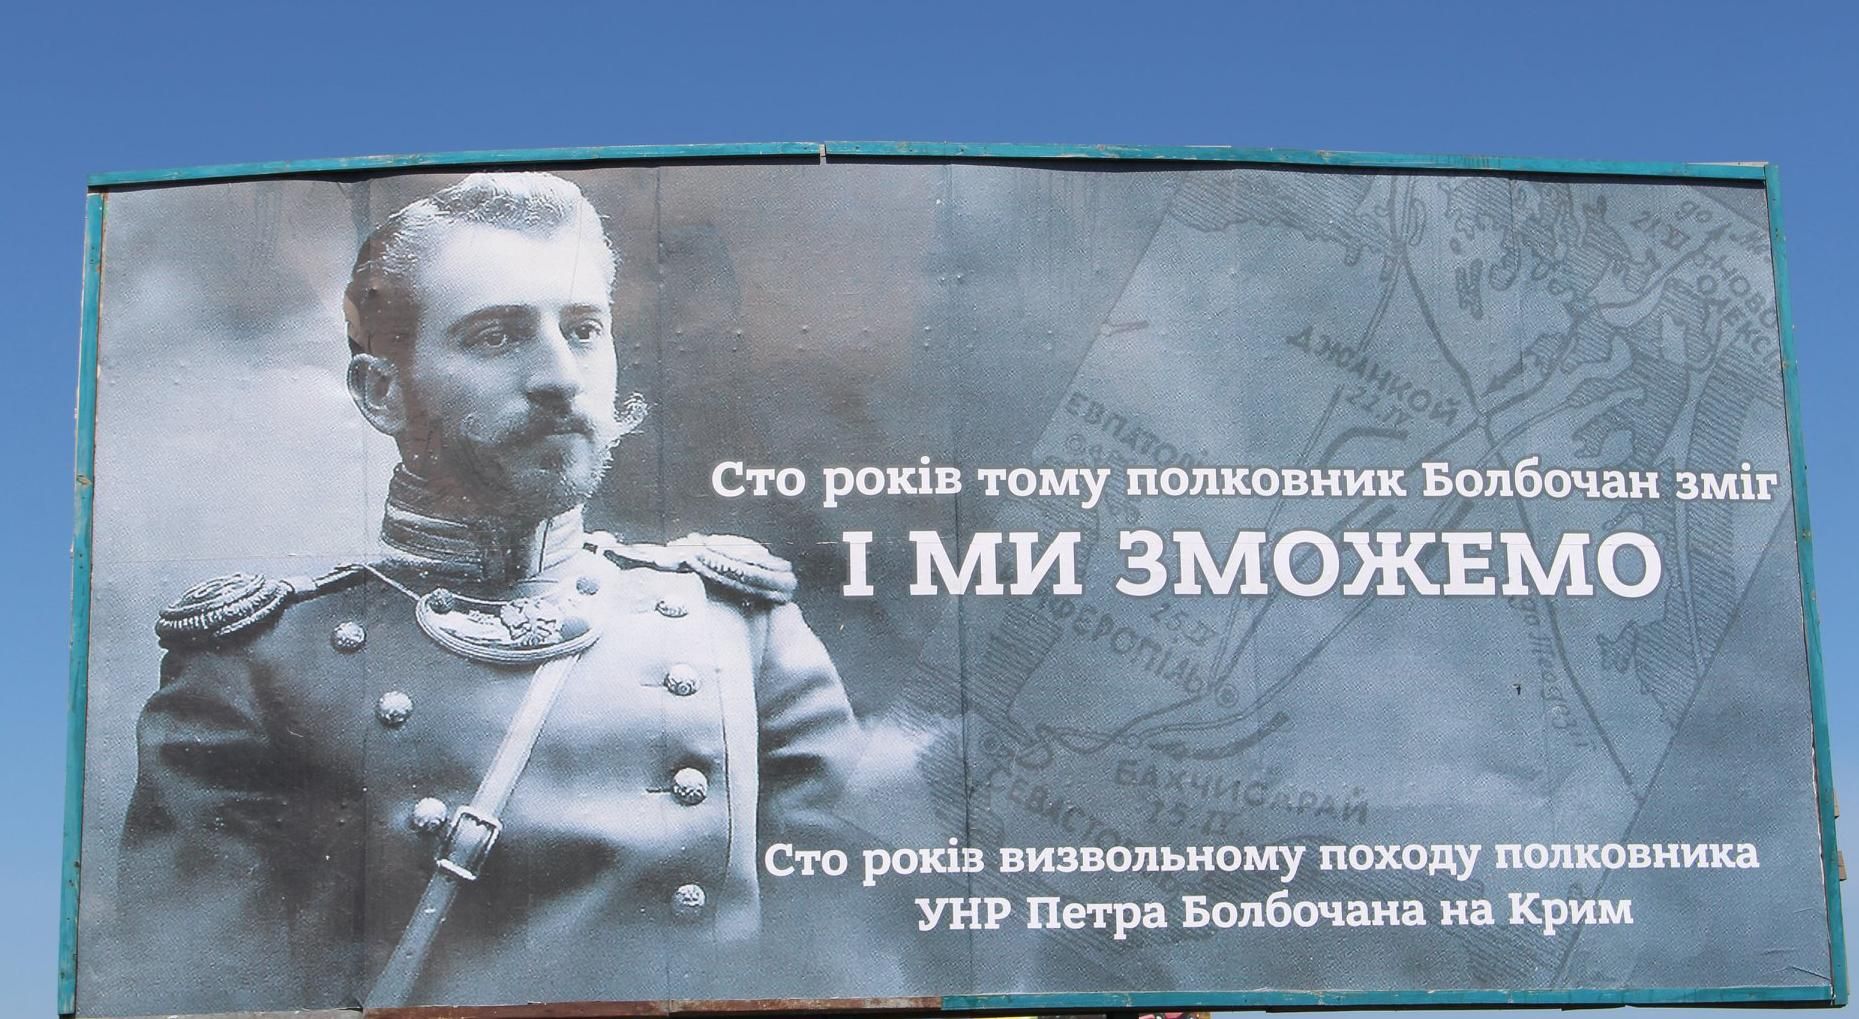 "Мы сможем": на границе с оккупированным Крымом появились патриотические билборды (фото)